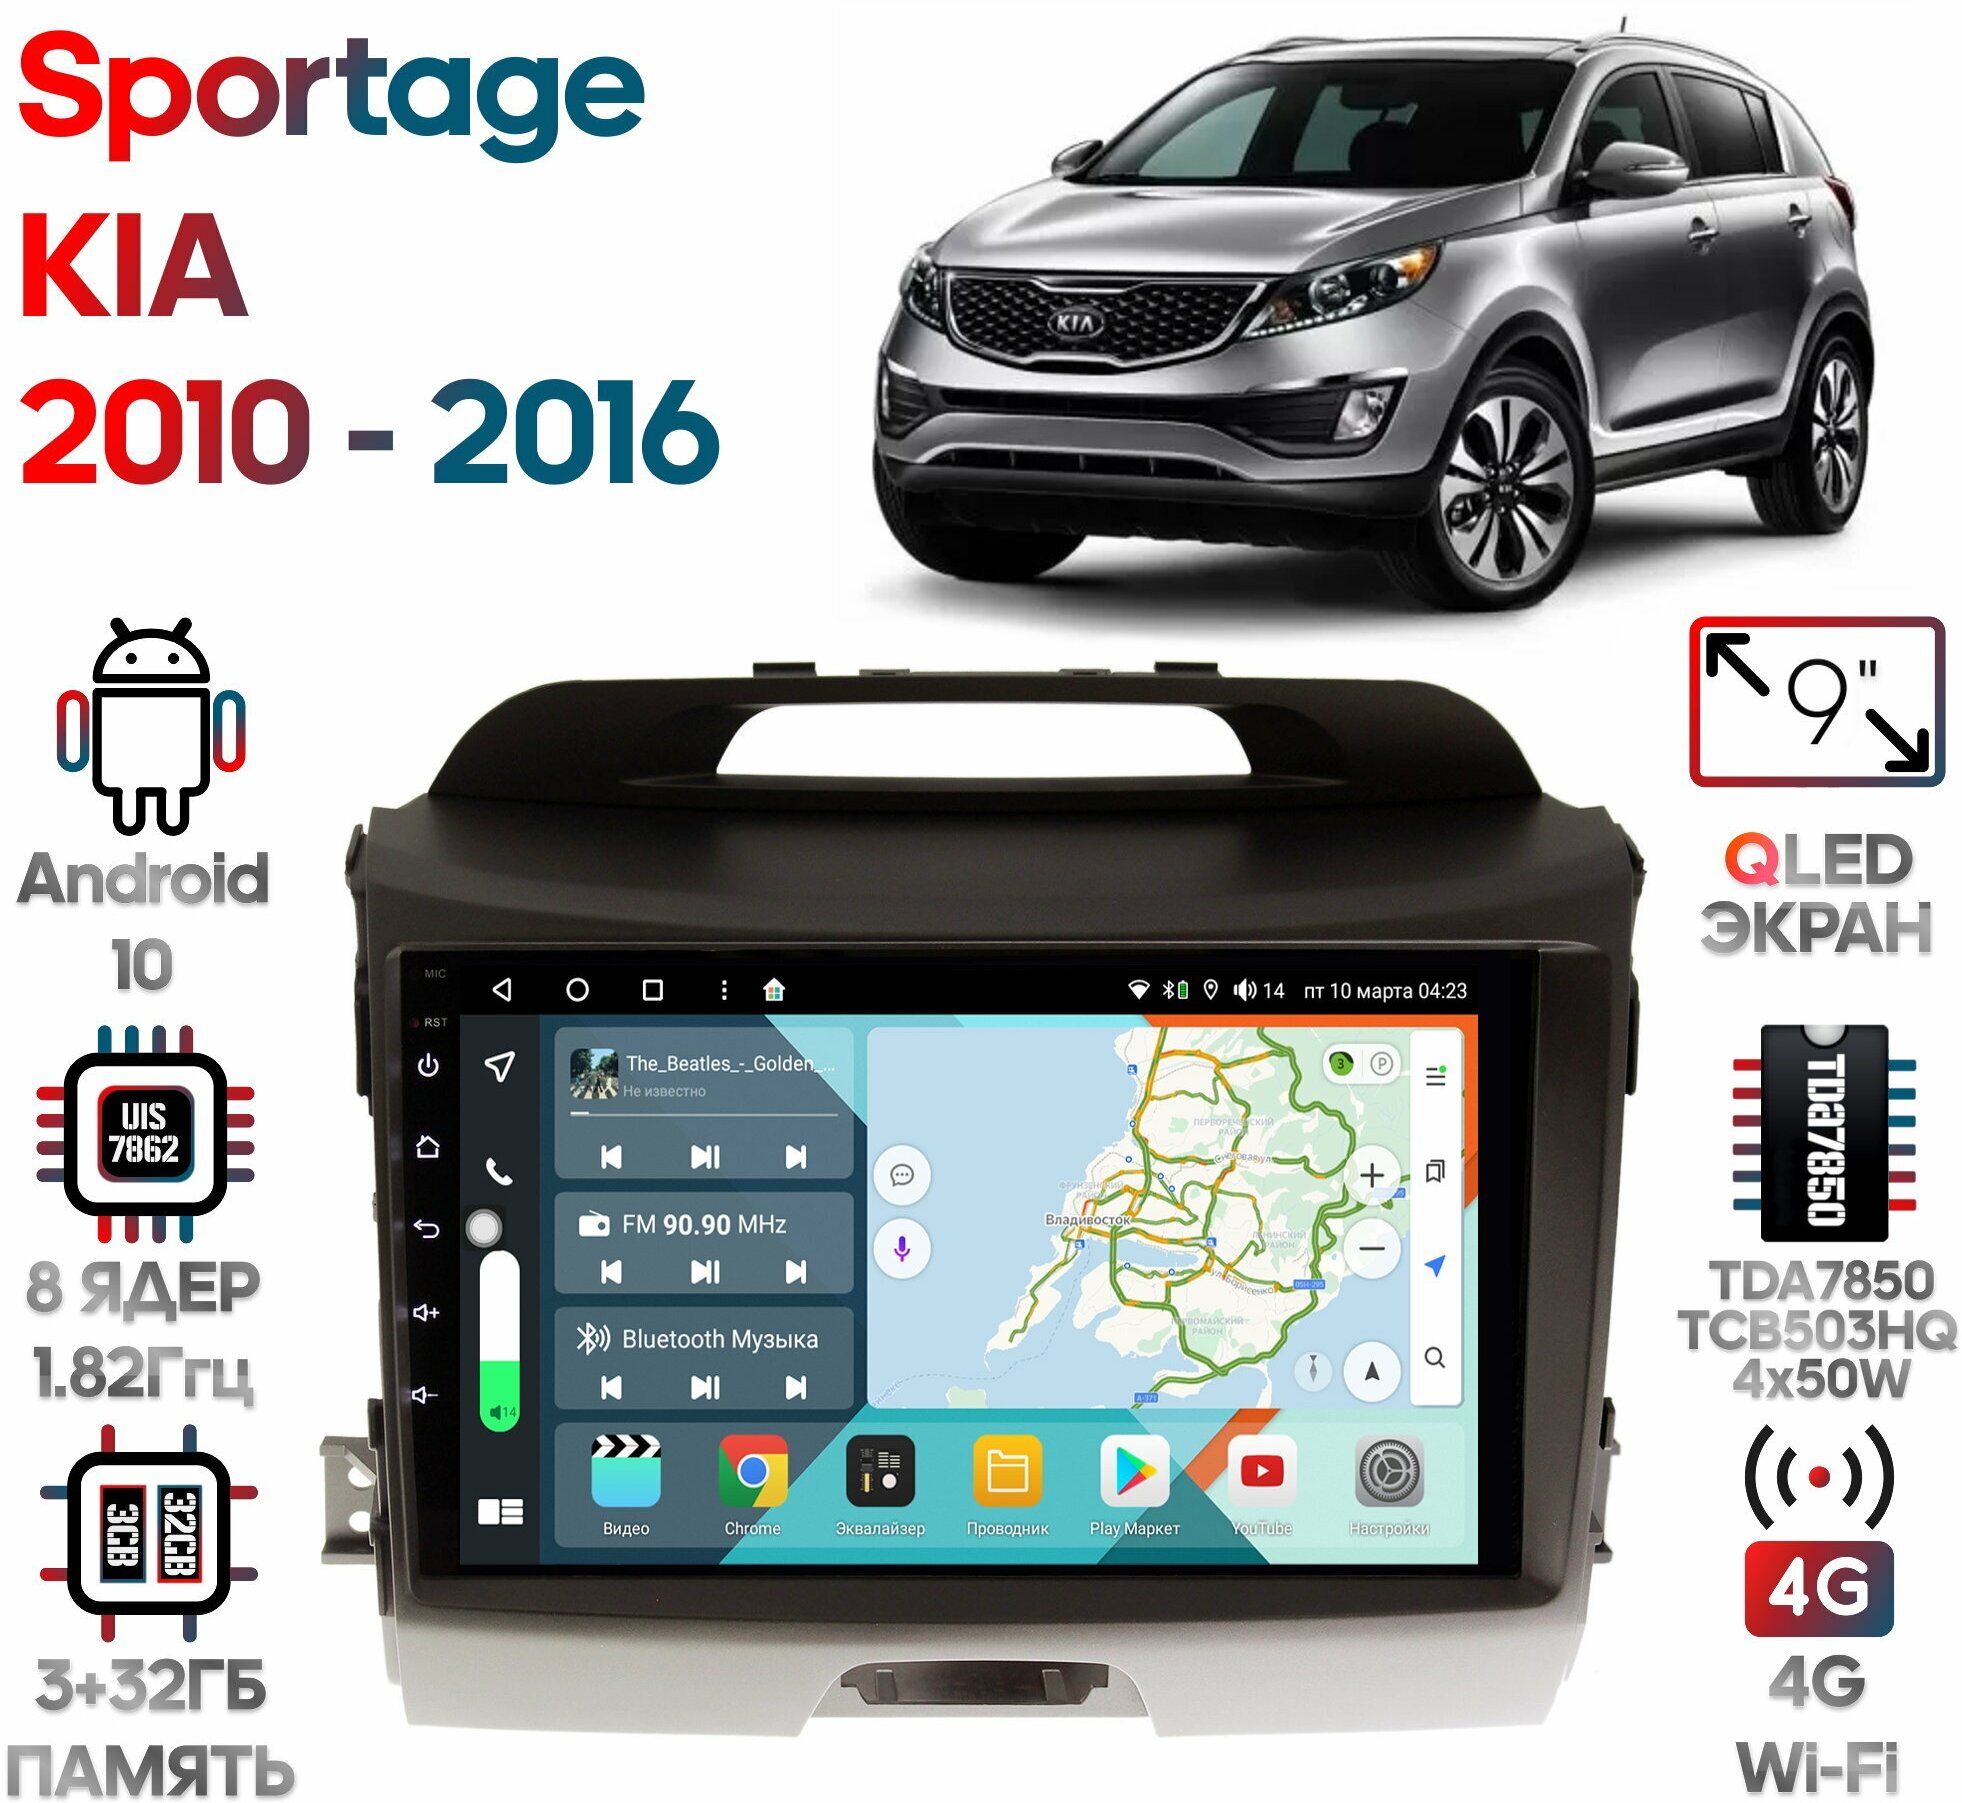 Штатная магнитола Wide Media KIA Sportage 2010 - 2016 [Android 10, 9 дюймов, 3/32GB, 8 ядер, TDA7850, DSP, SPDIF, QLED, 1280*720] для авто без камеры